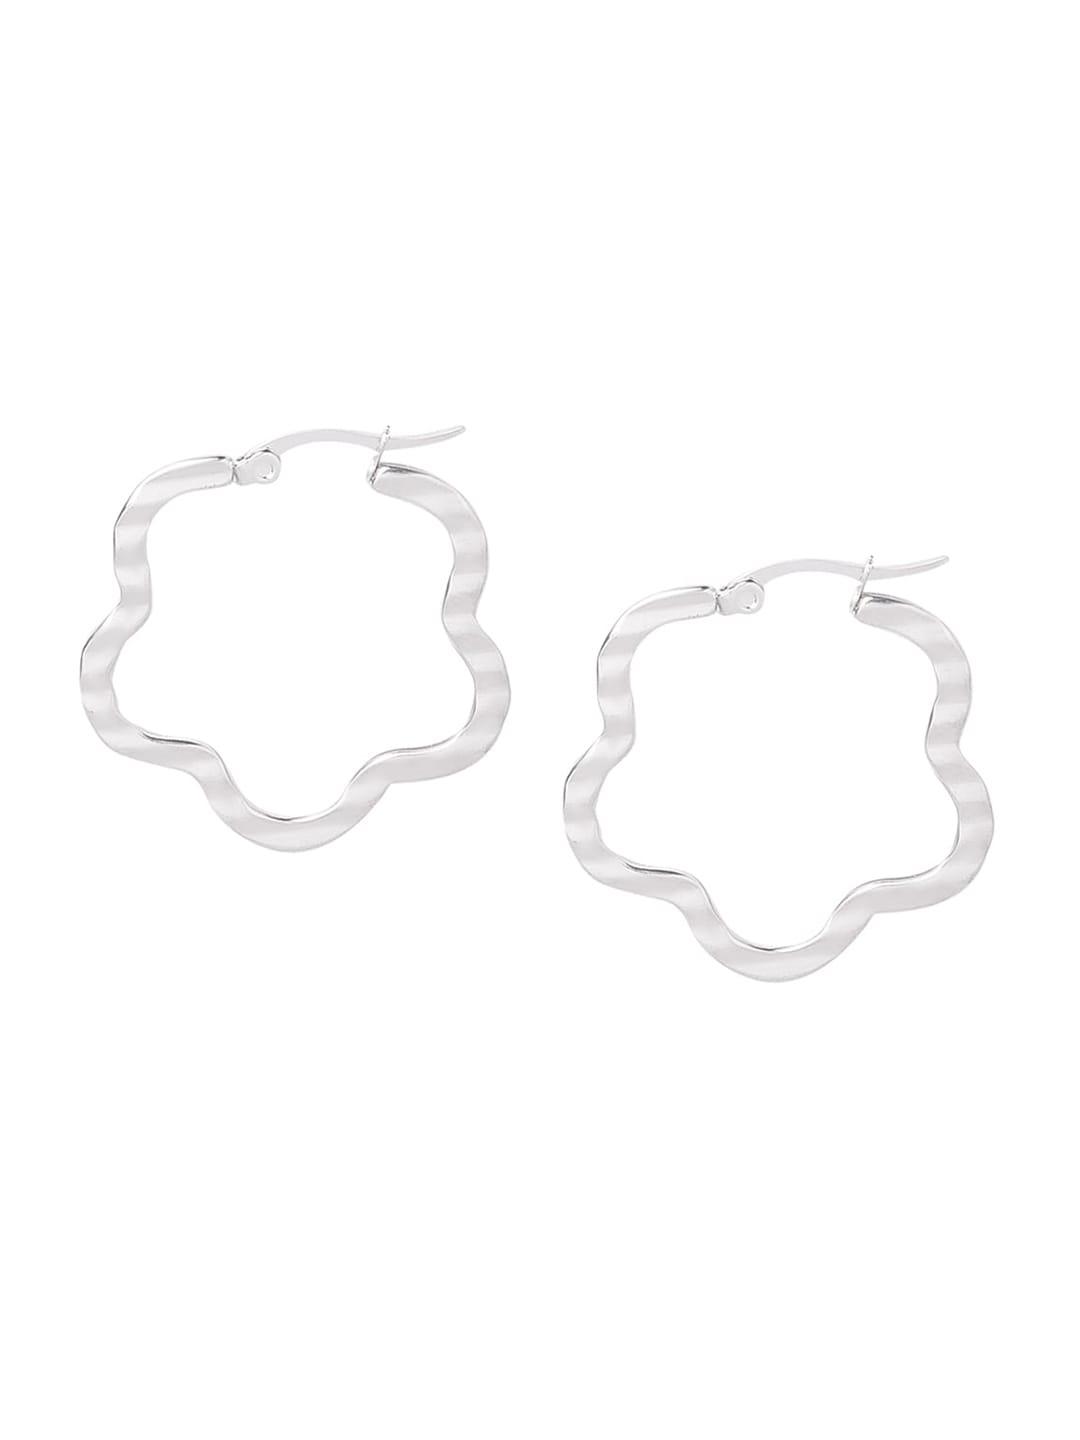 moon dust silver-toned floral shape hoop earrings